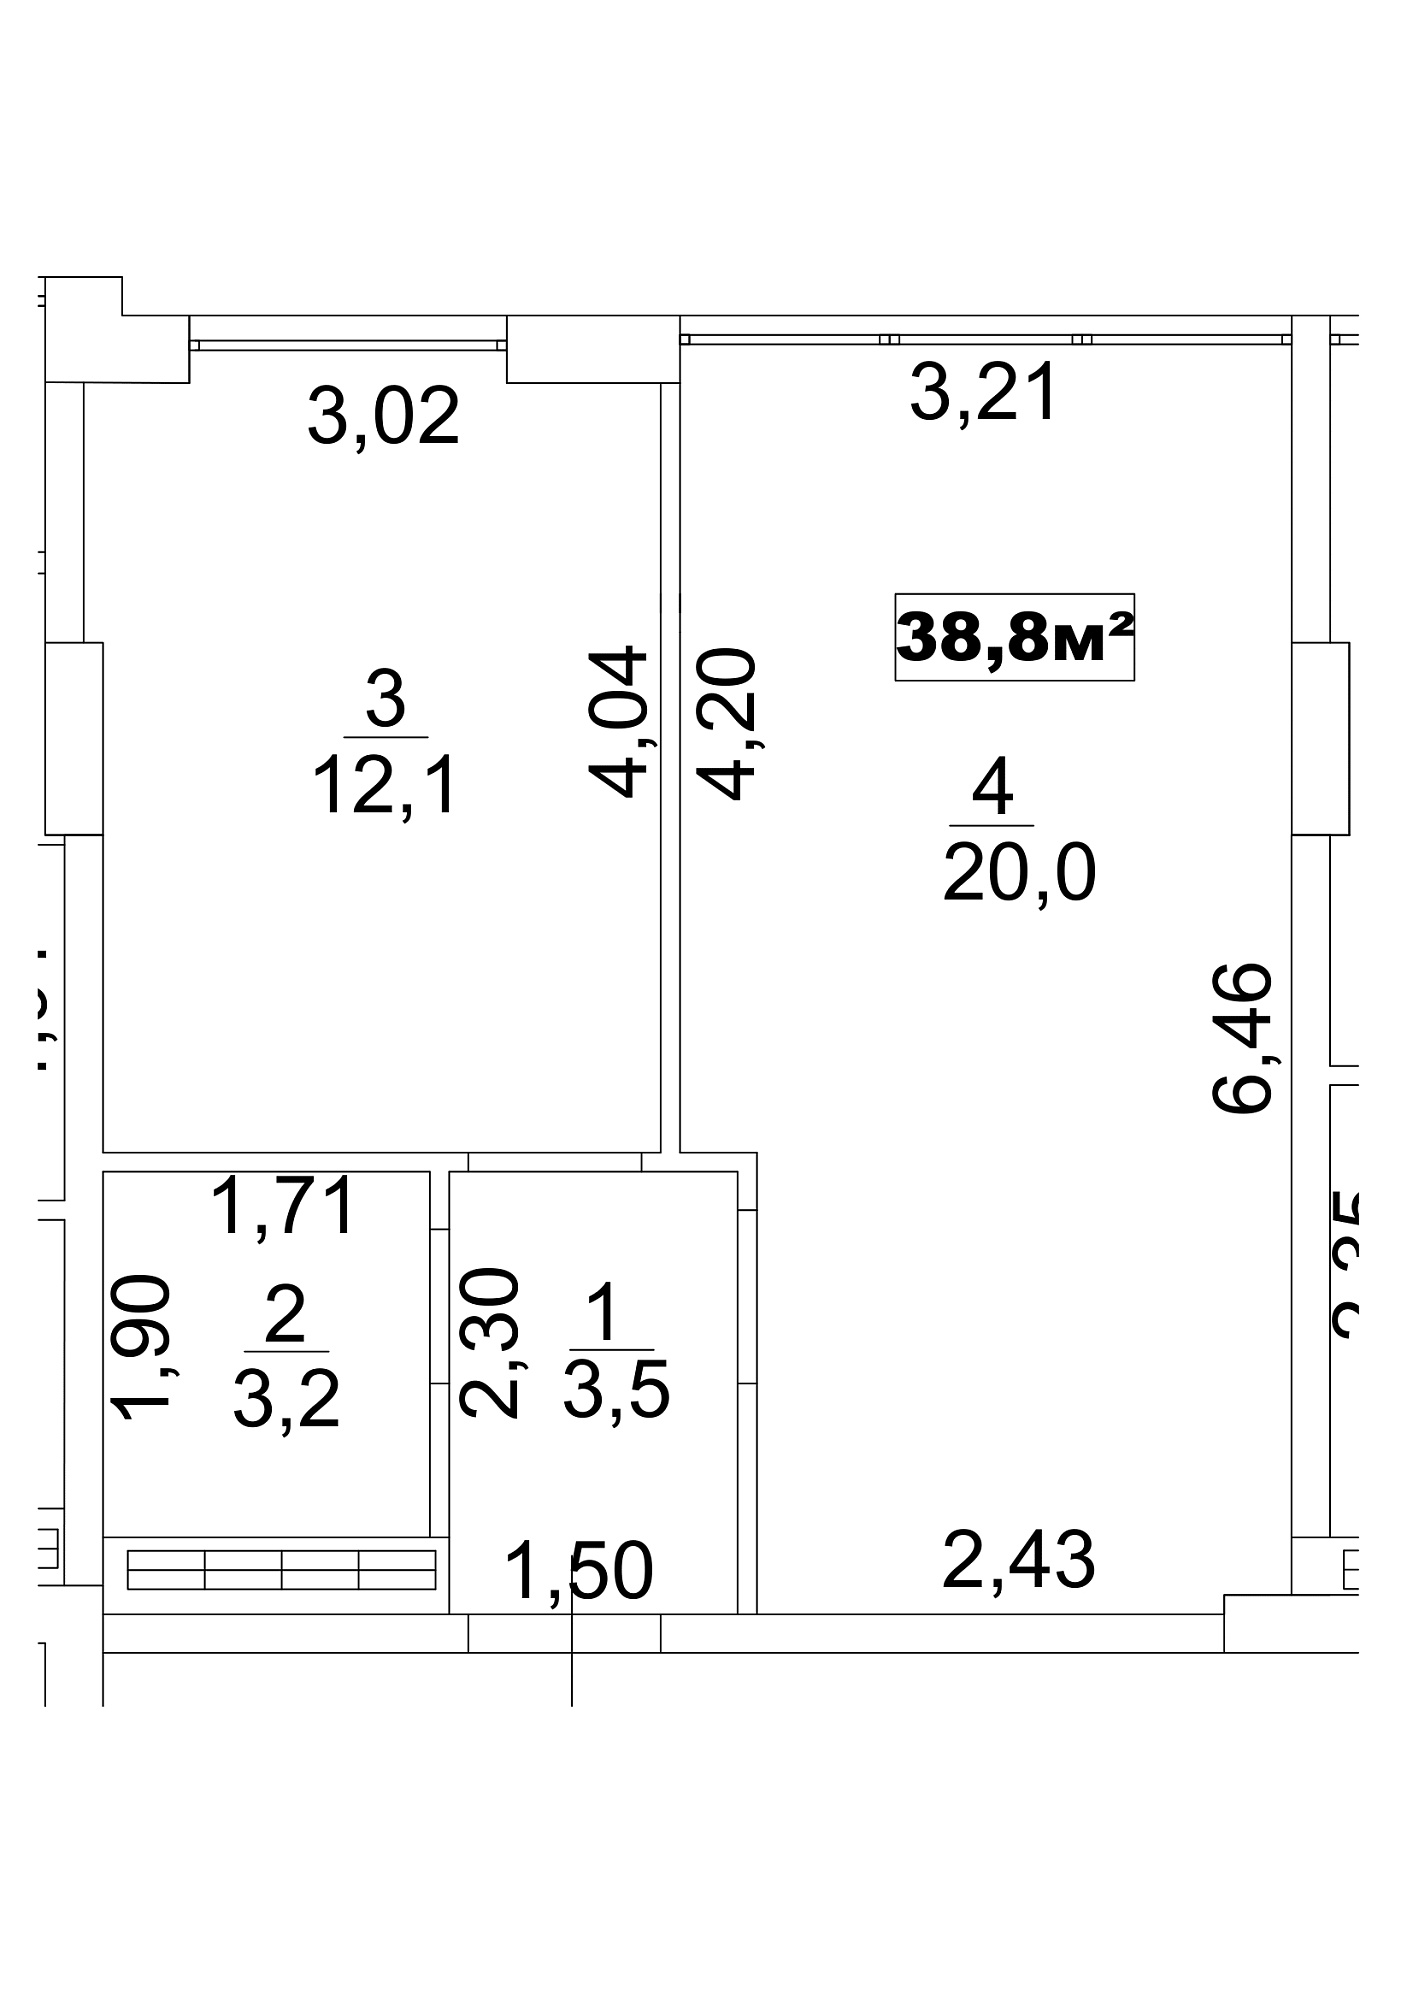 Планировка 1-к квартира площей 38.8м2, AB-13-08/00066.